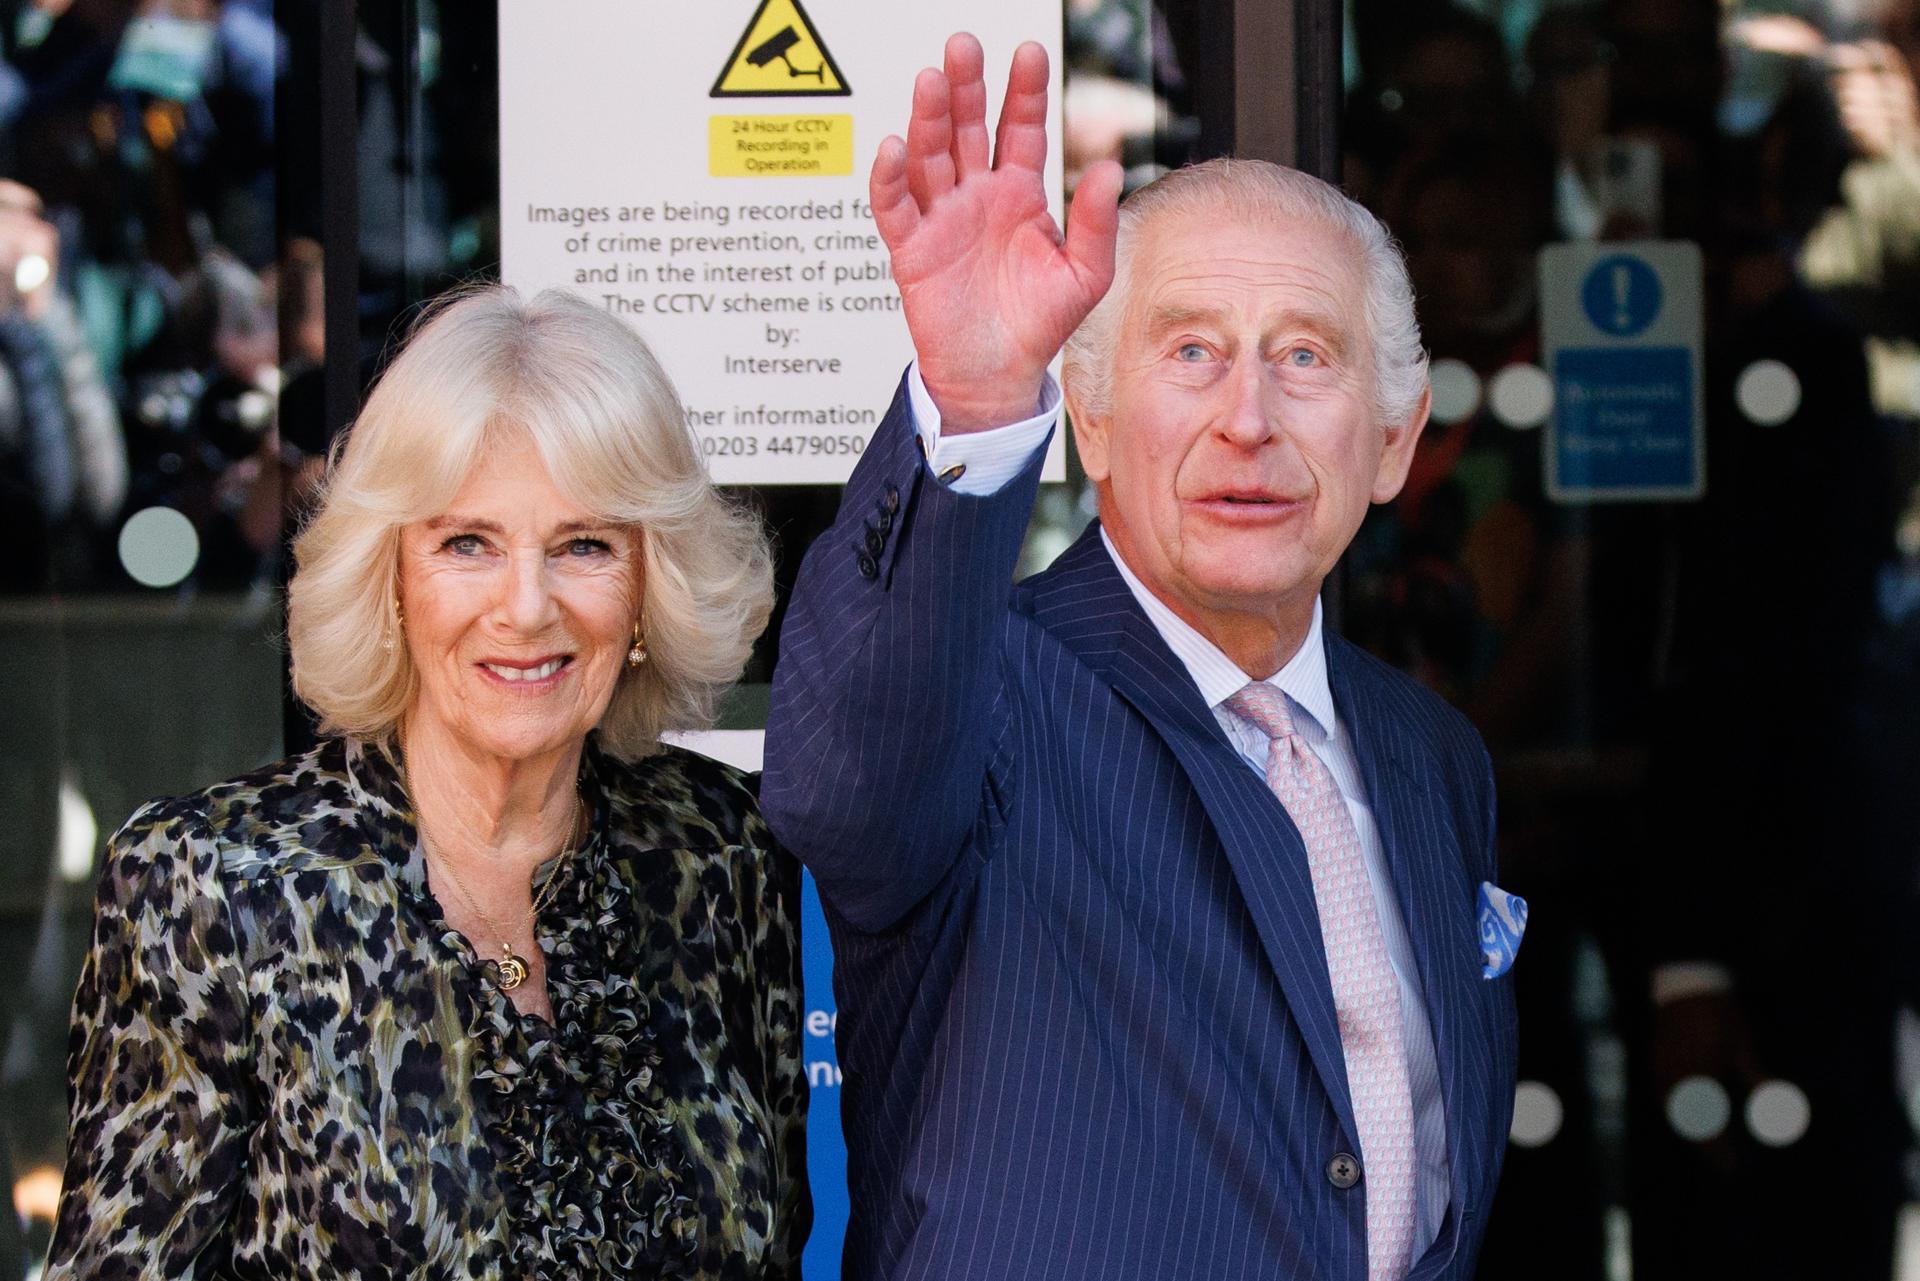 Rey Carlos III visita un centro contra el cáncer en su primer compromiso público desde febrero